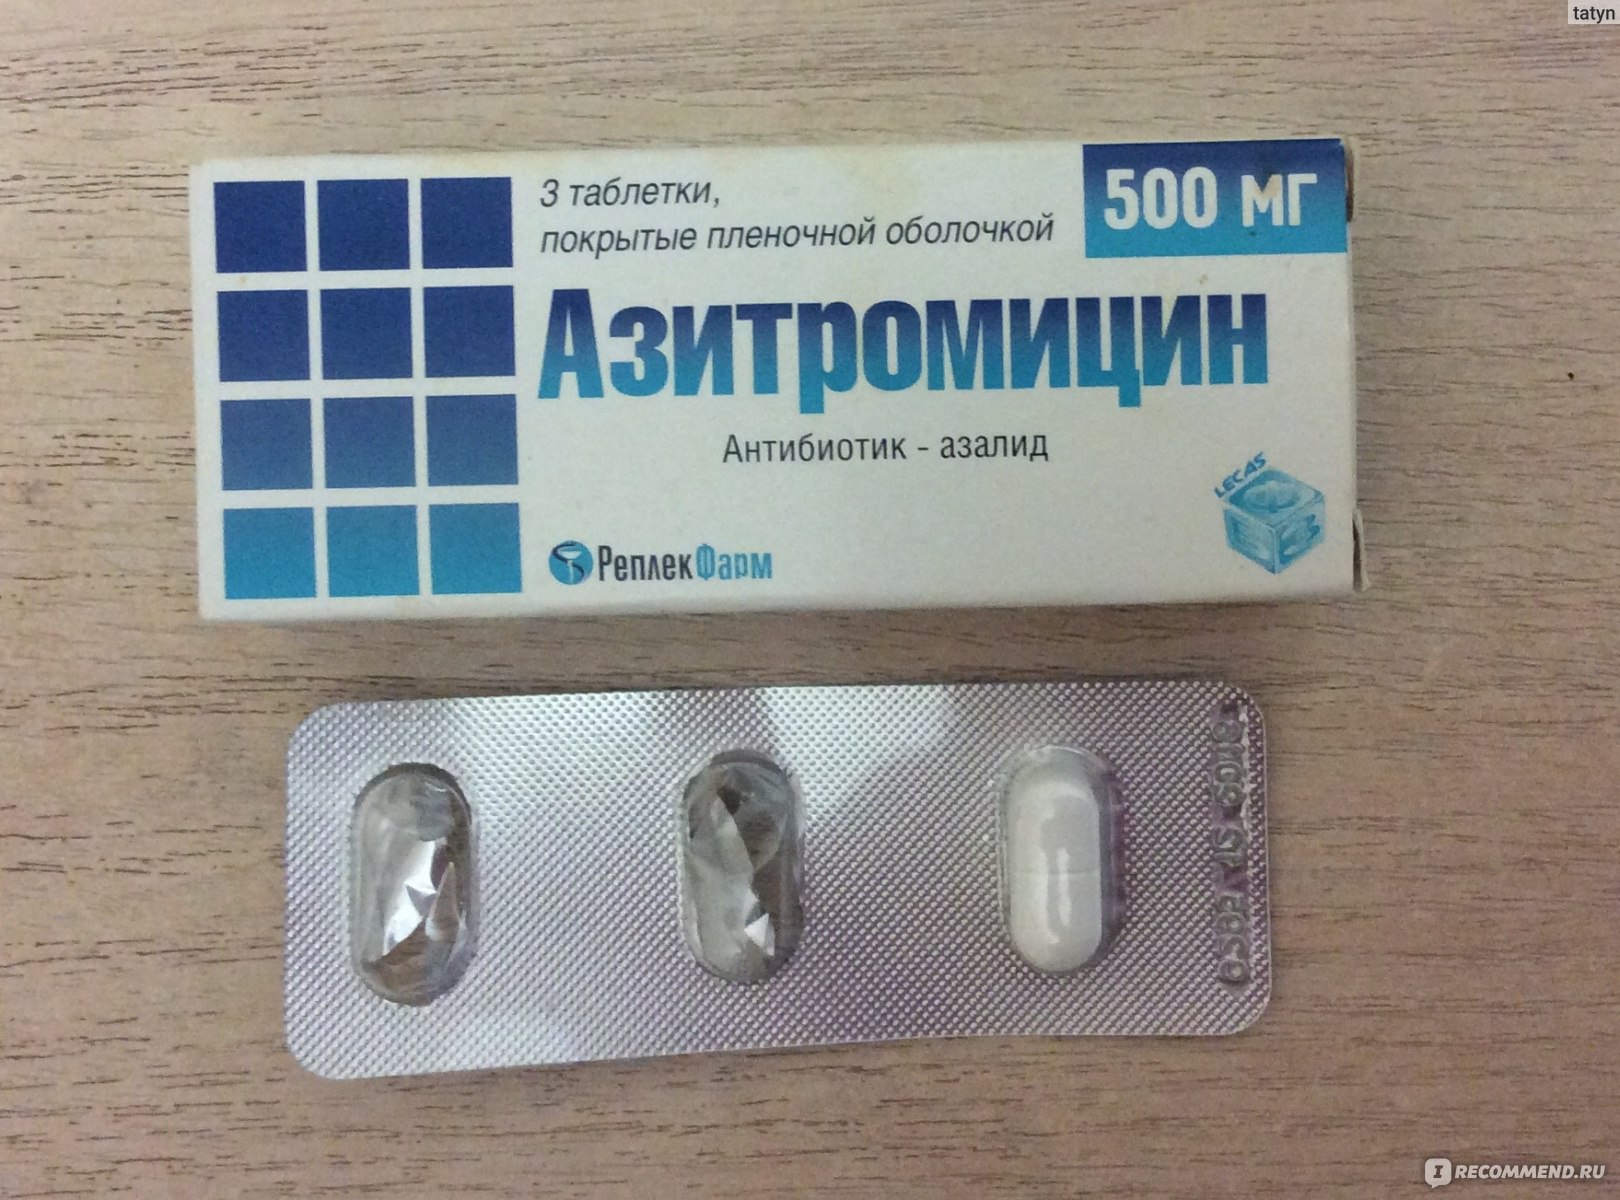 Антибиотик 3 таблетки в упаковке Азитромицин